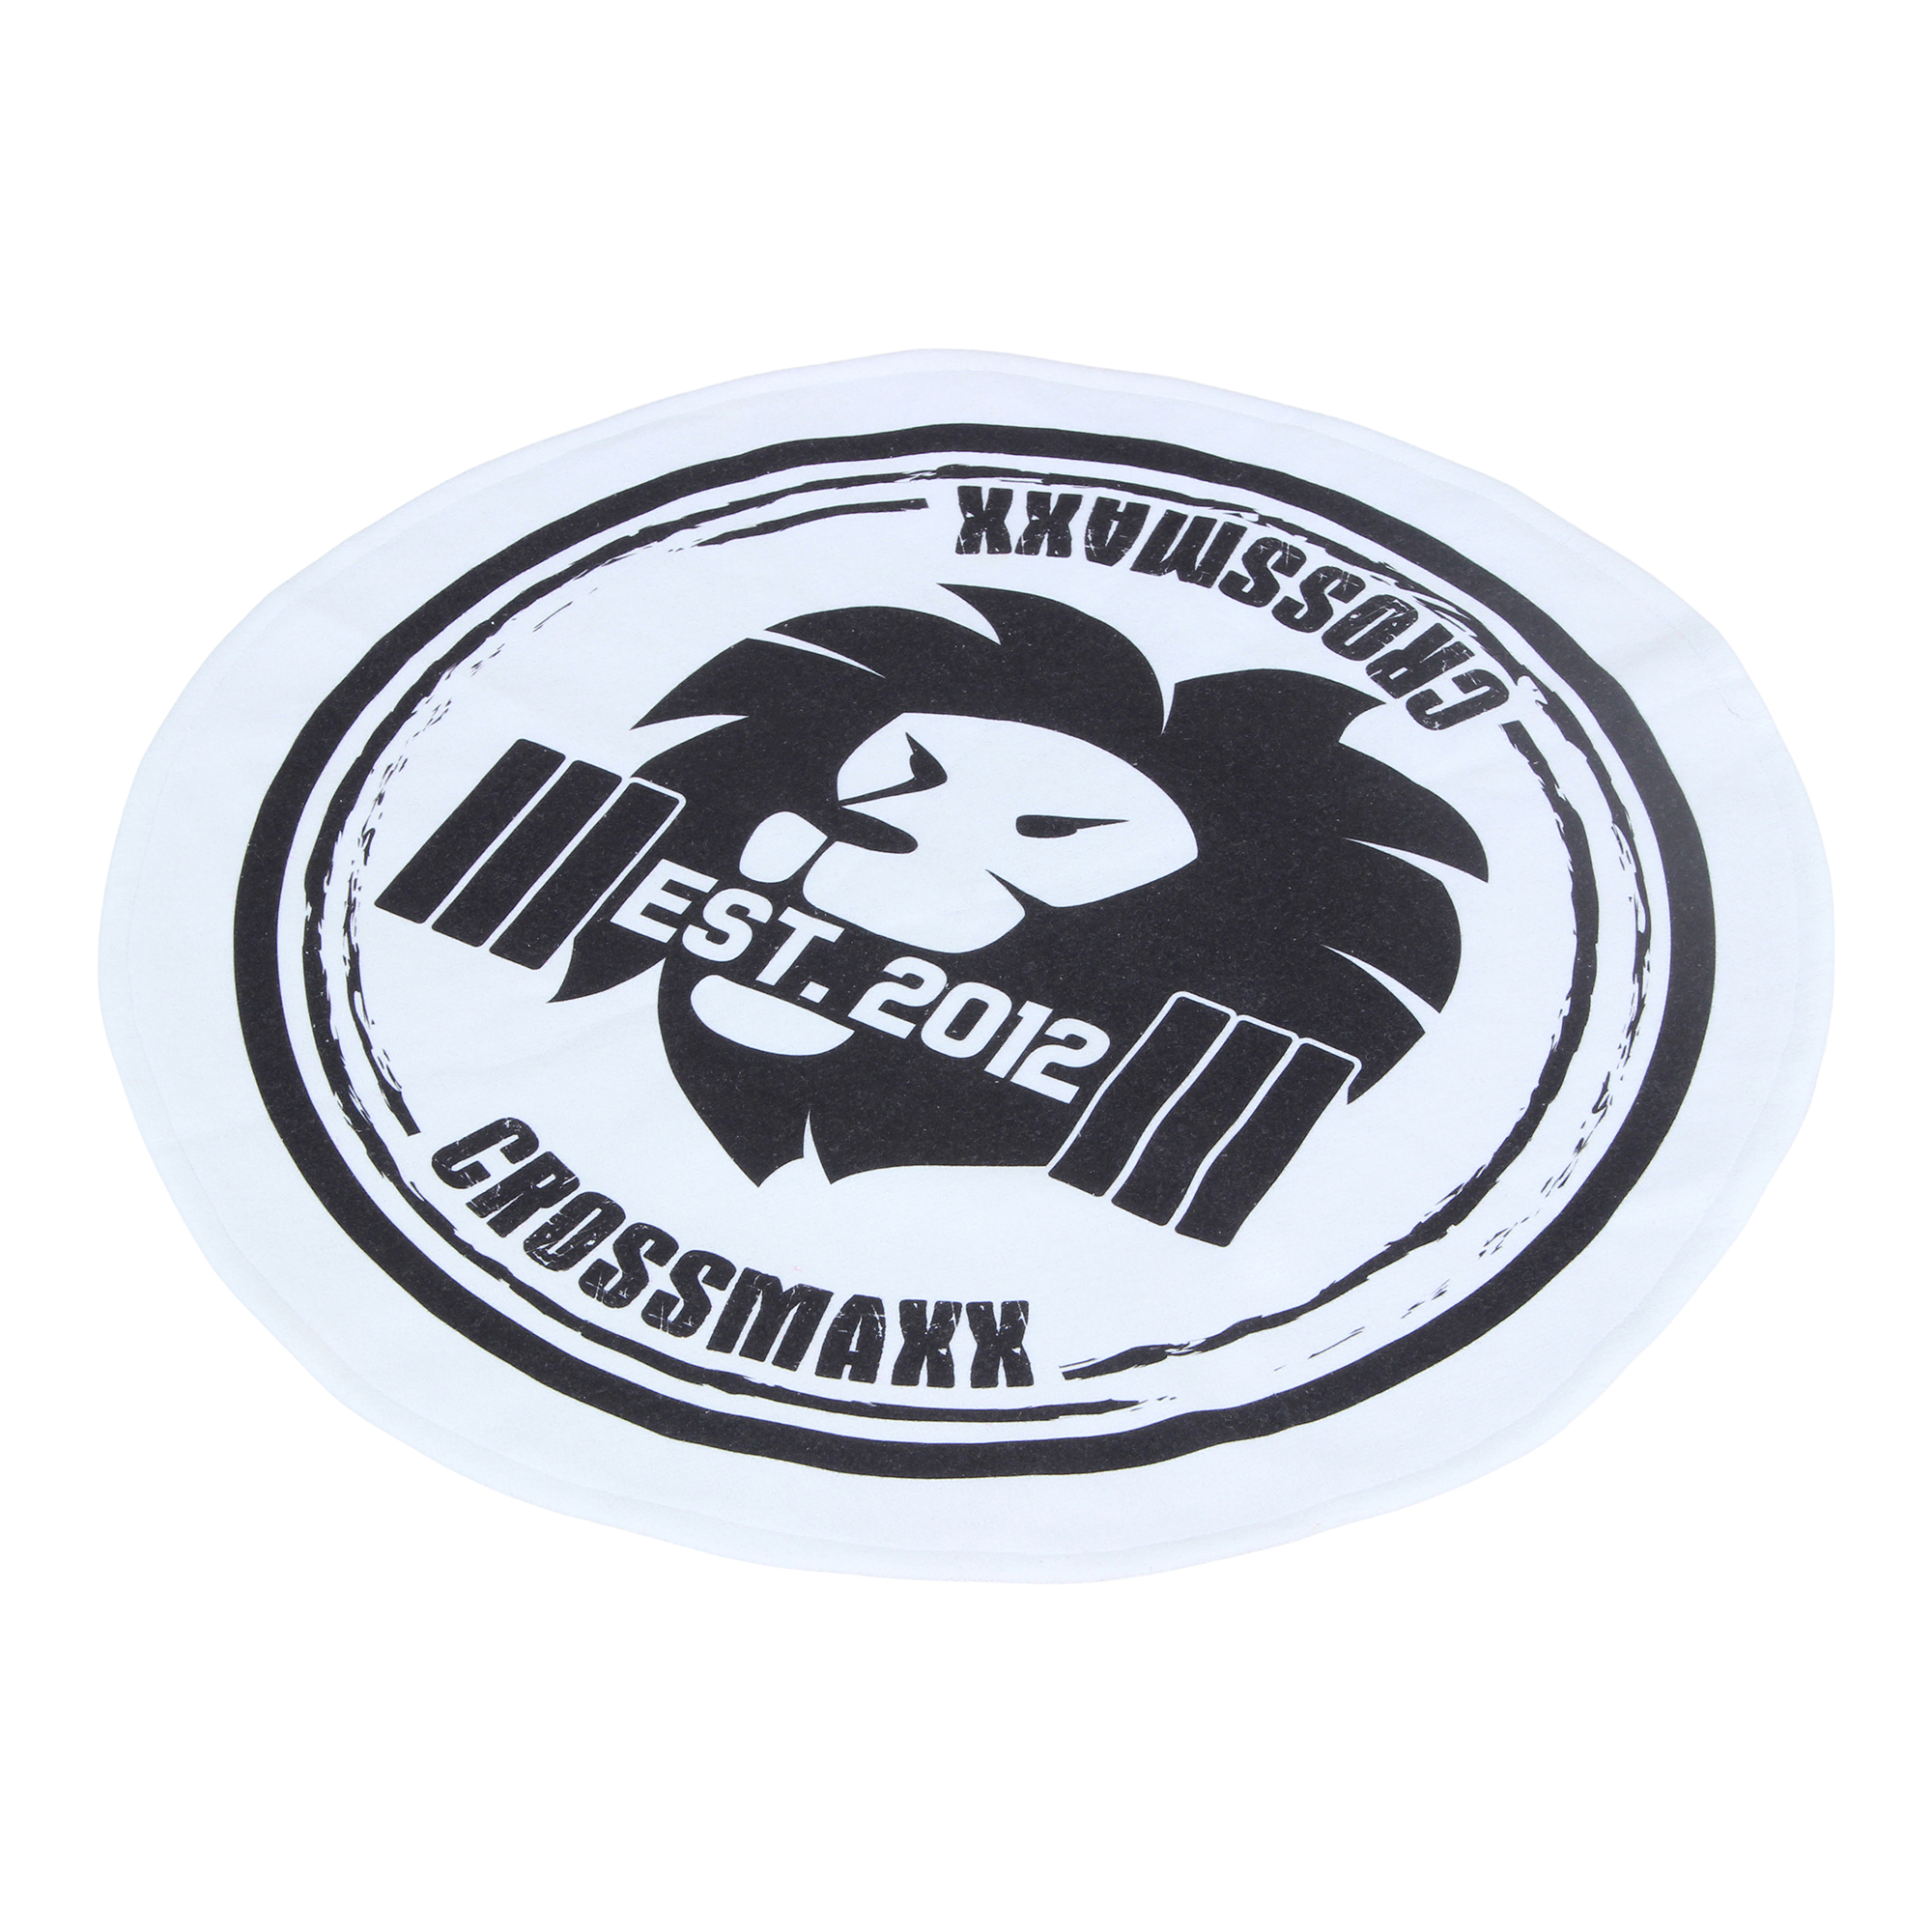 Brug Crossmaxx - Rundt håndklæde (Ø: 50 cm) med logo til en forbedret oplevelse